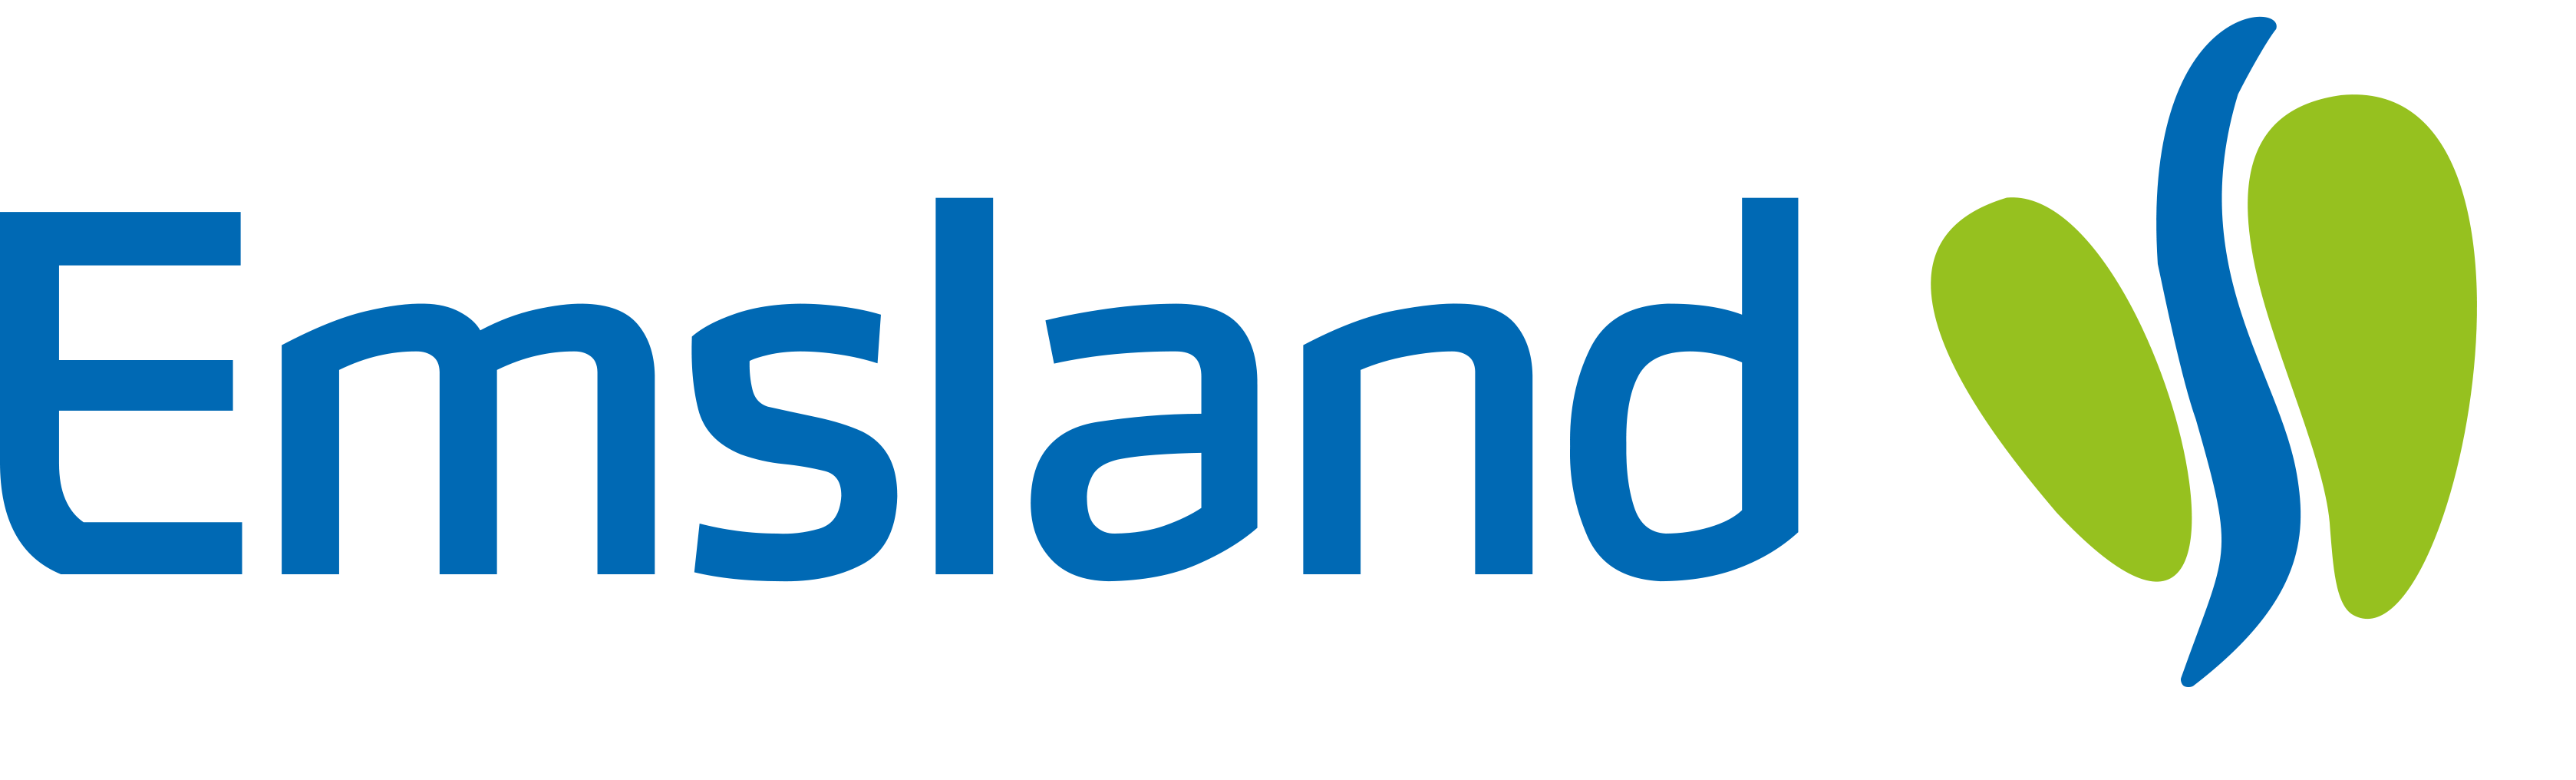 emsland-logo-v1-2